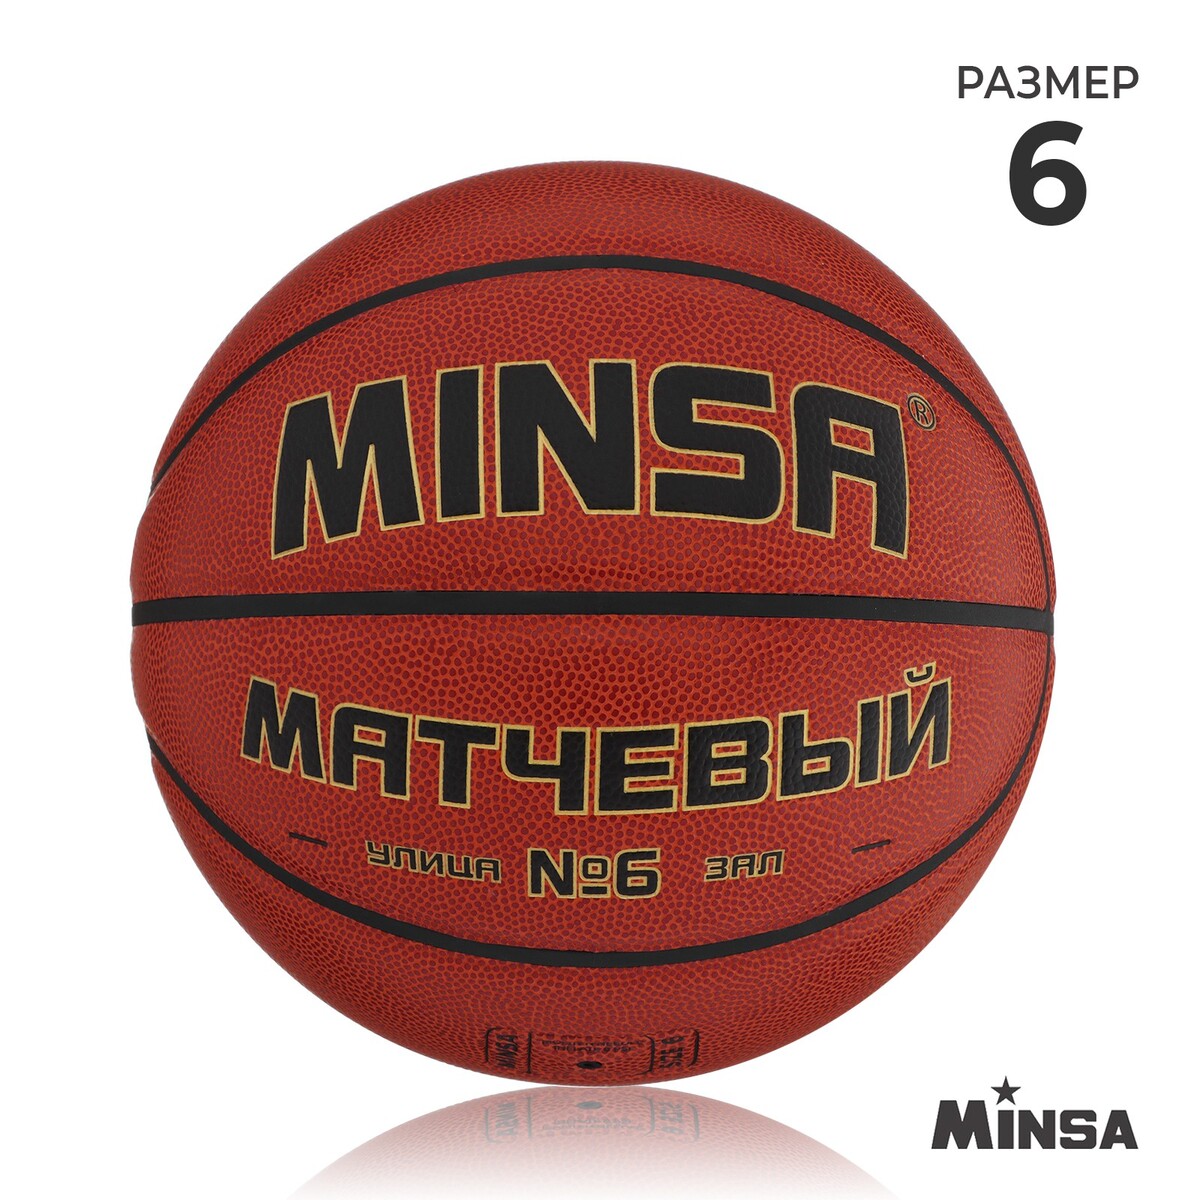 Баскетбольный мяч minsa, матчевый, microfiber pu, клееный, 8 панелей, р. 6 мяч баскетбольный minsa пвх клееный 8 панелей р 5